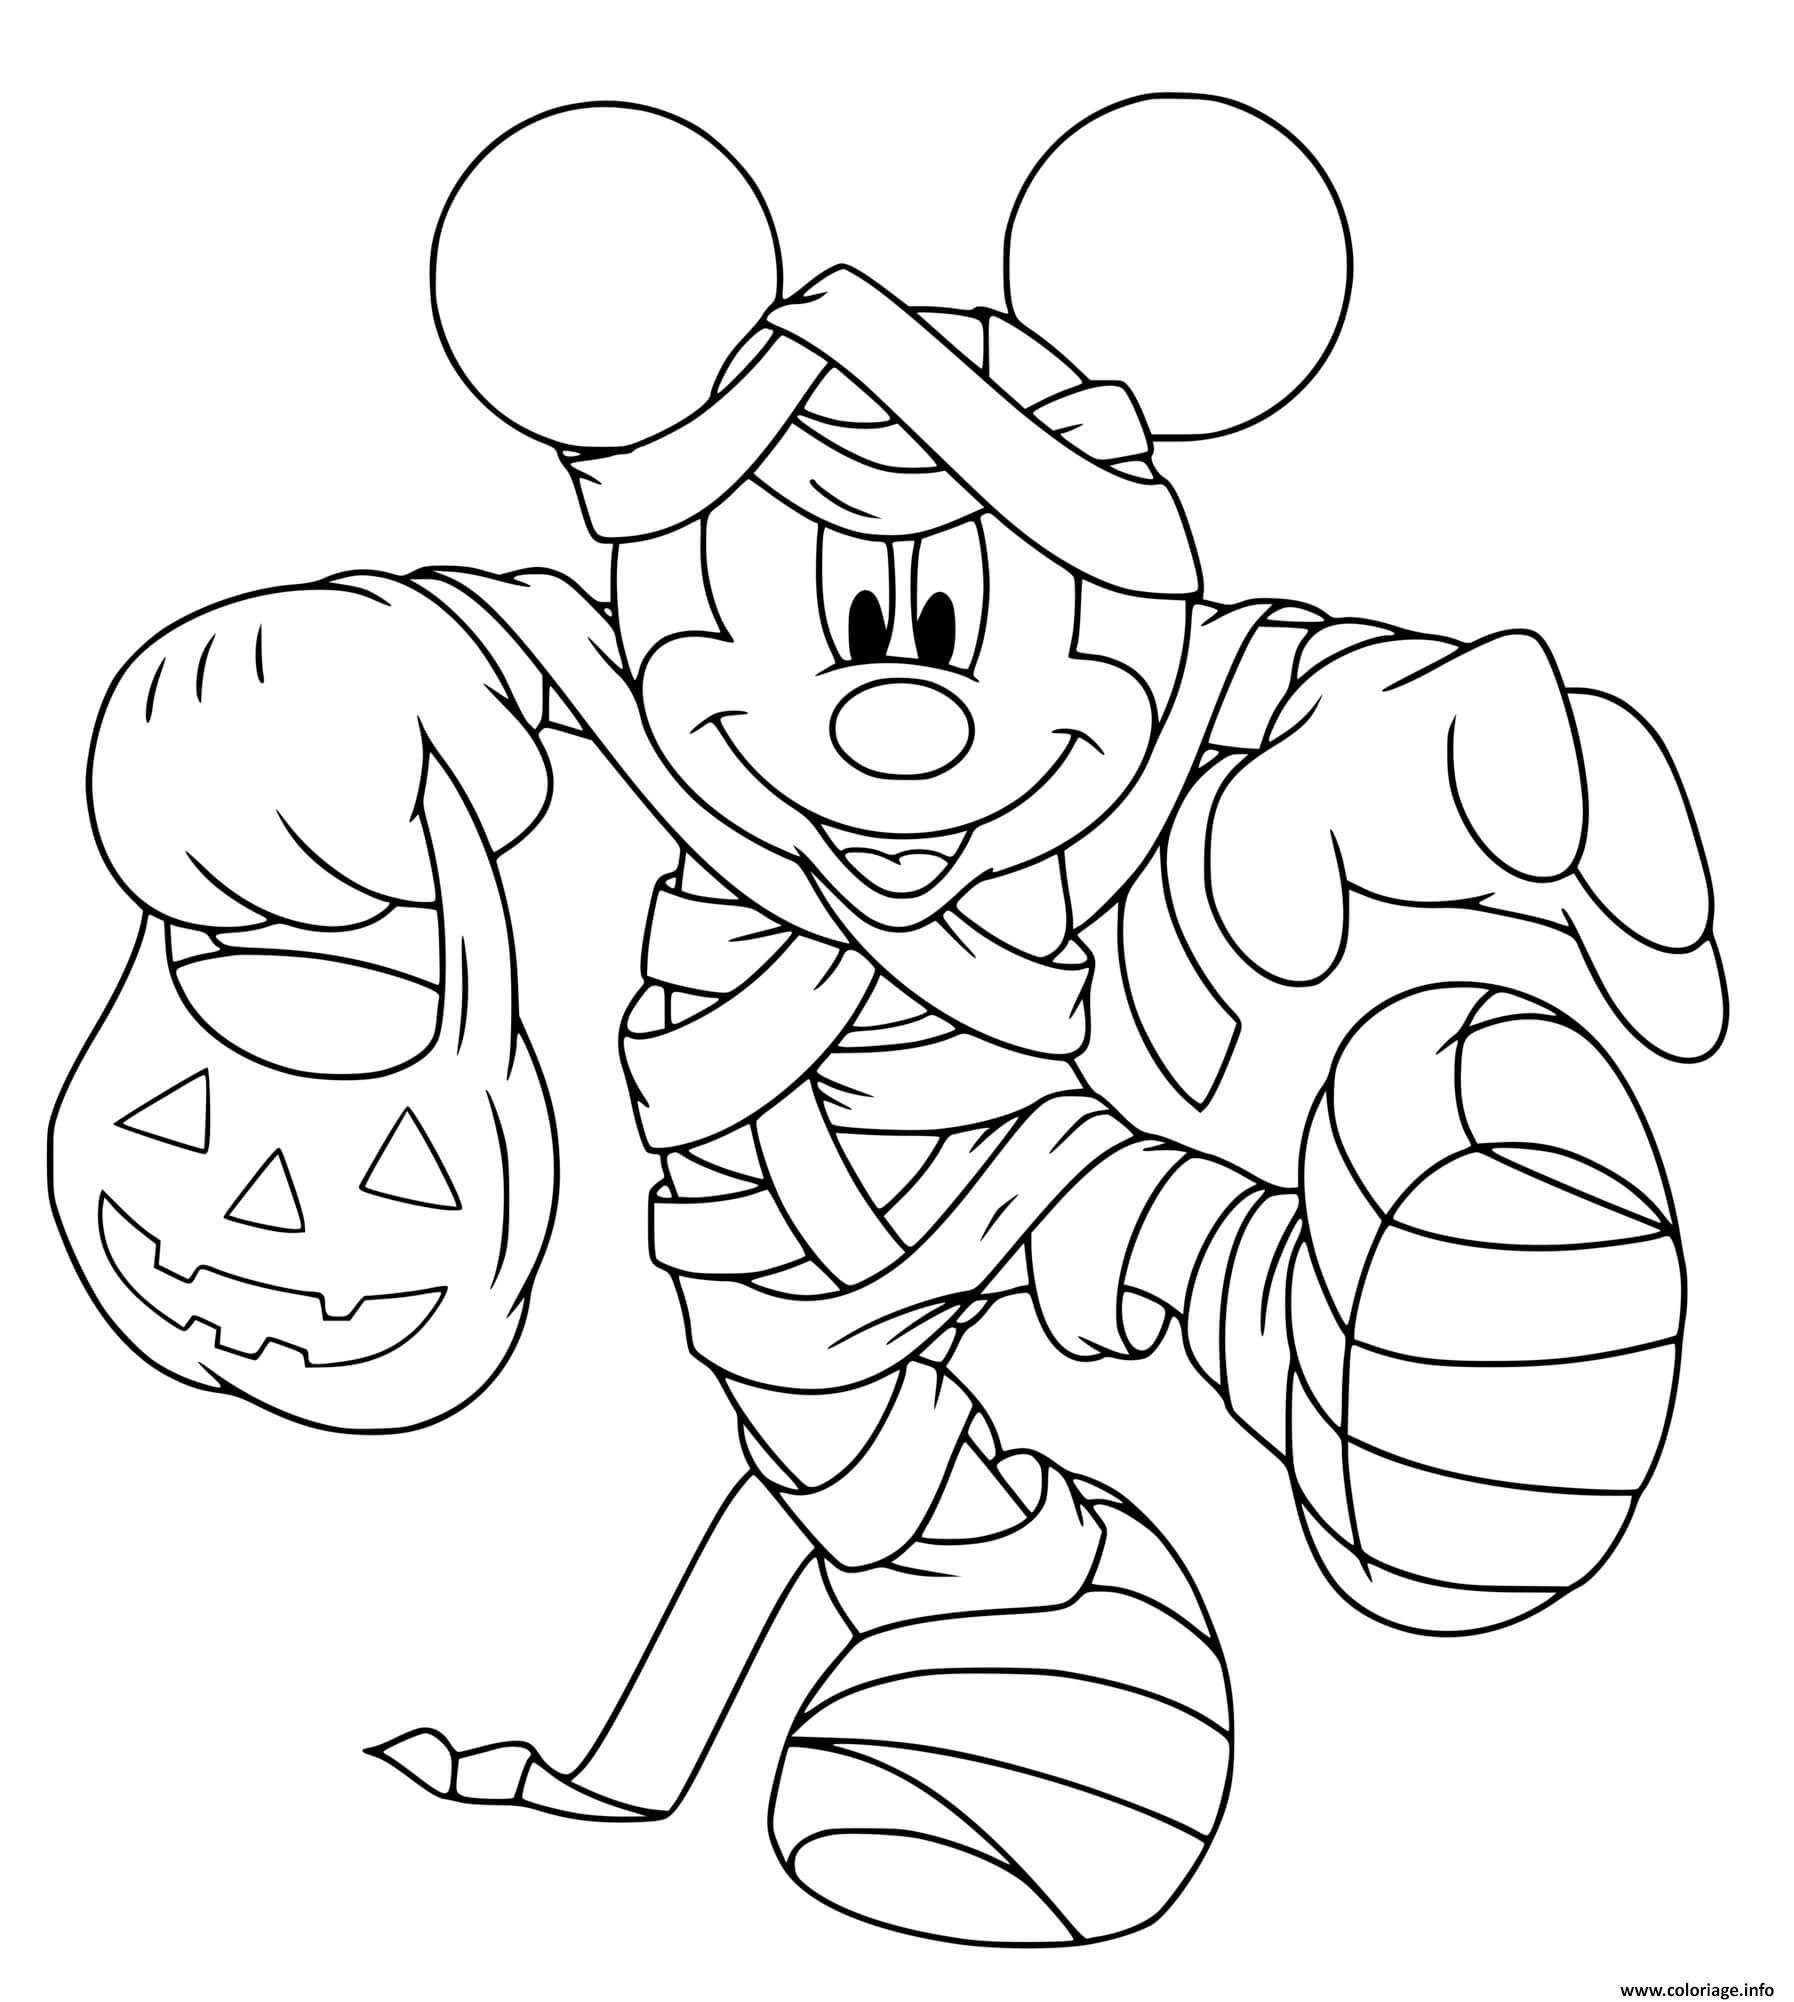 Dessin mickey mouse la momie pour halloween Coloriage Gratuit à Imprimer